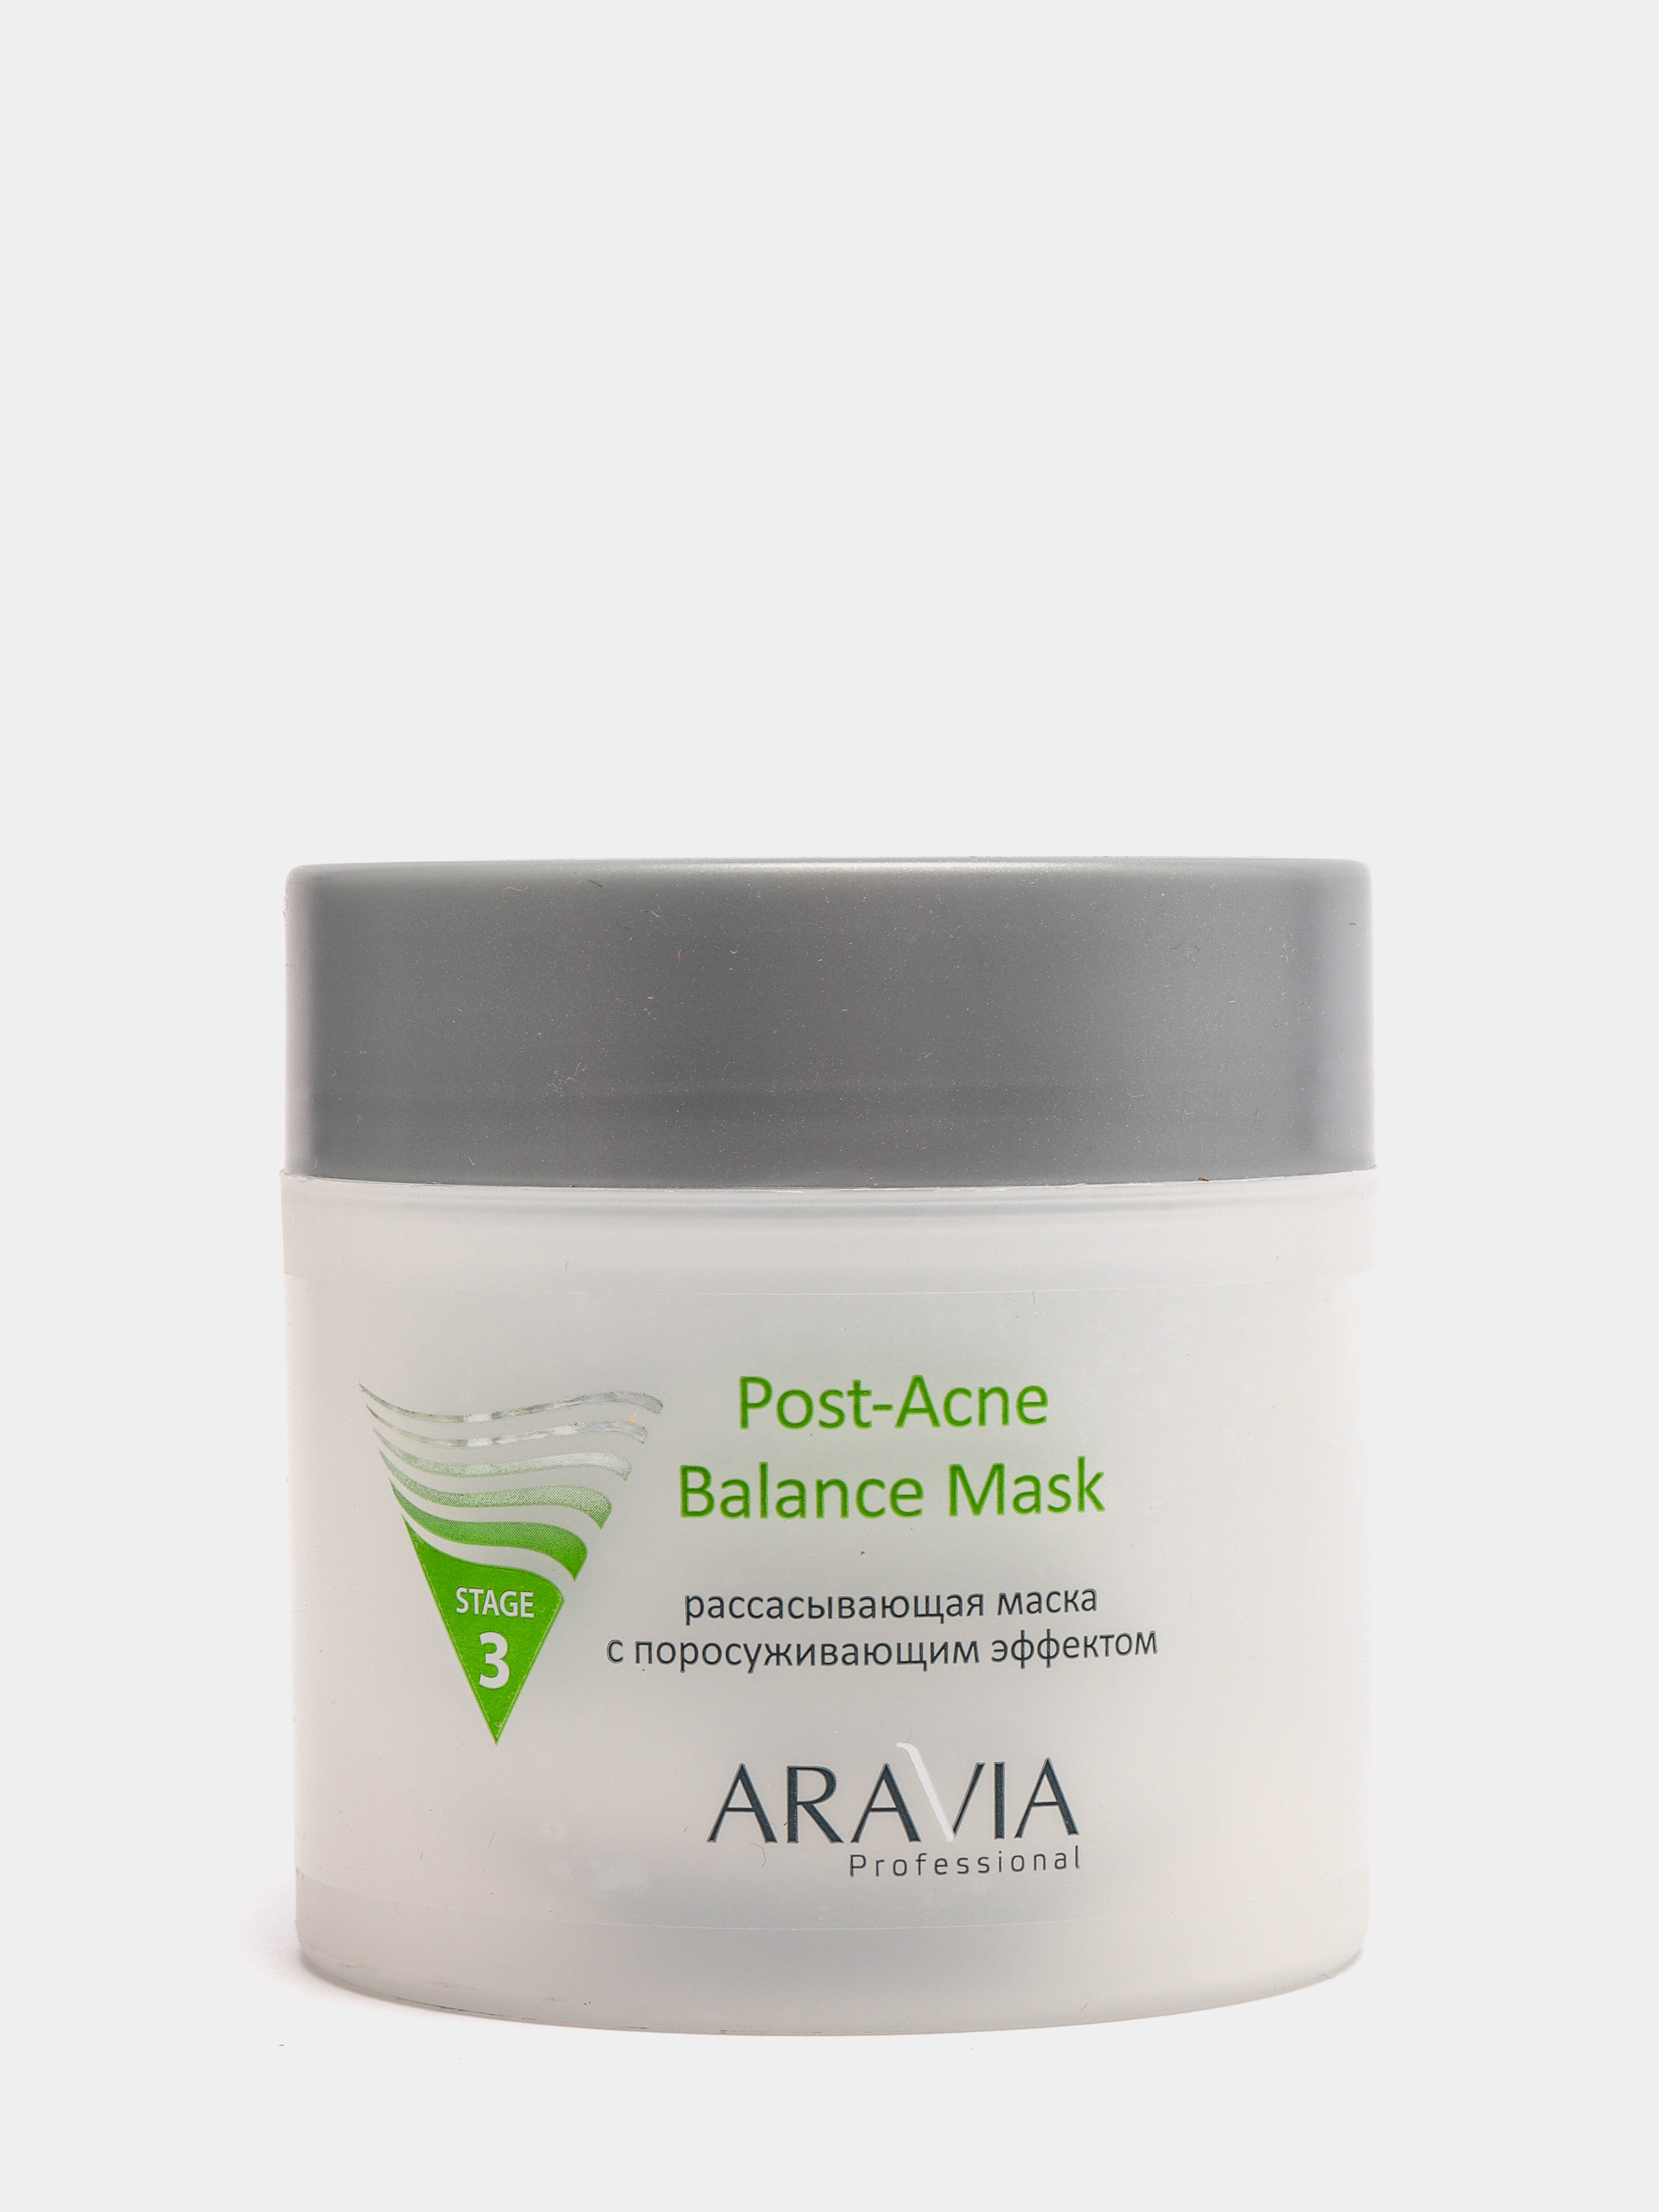 Post acne balance. Aravia Post acne Balance Mask. Аравия рассасывающая маска с поросуживающим эффектом. Рассасывающая маска Аравия. Рассасывающая маска Аравия отзывы.